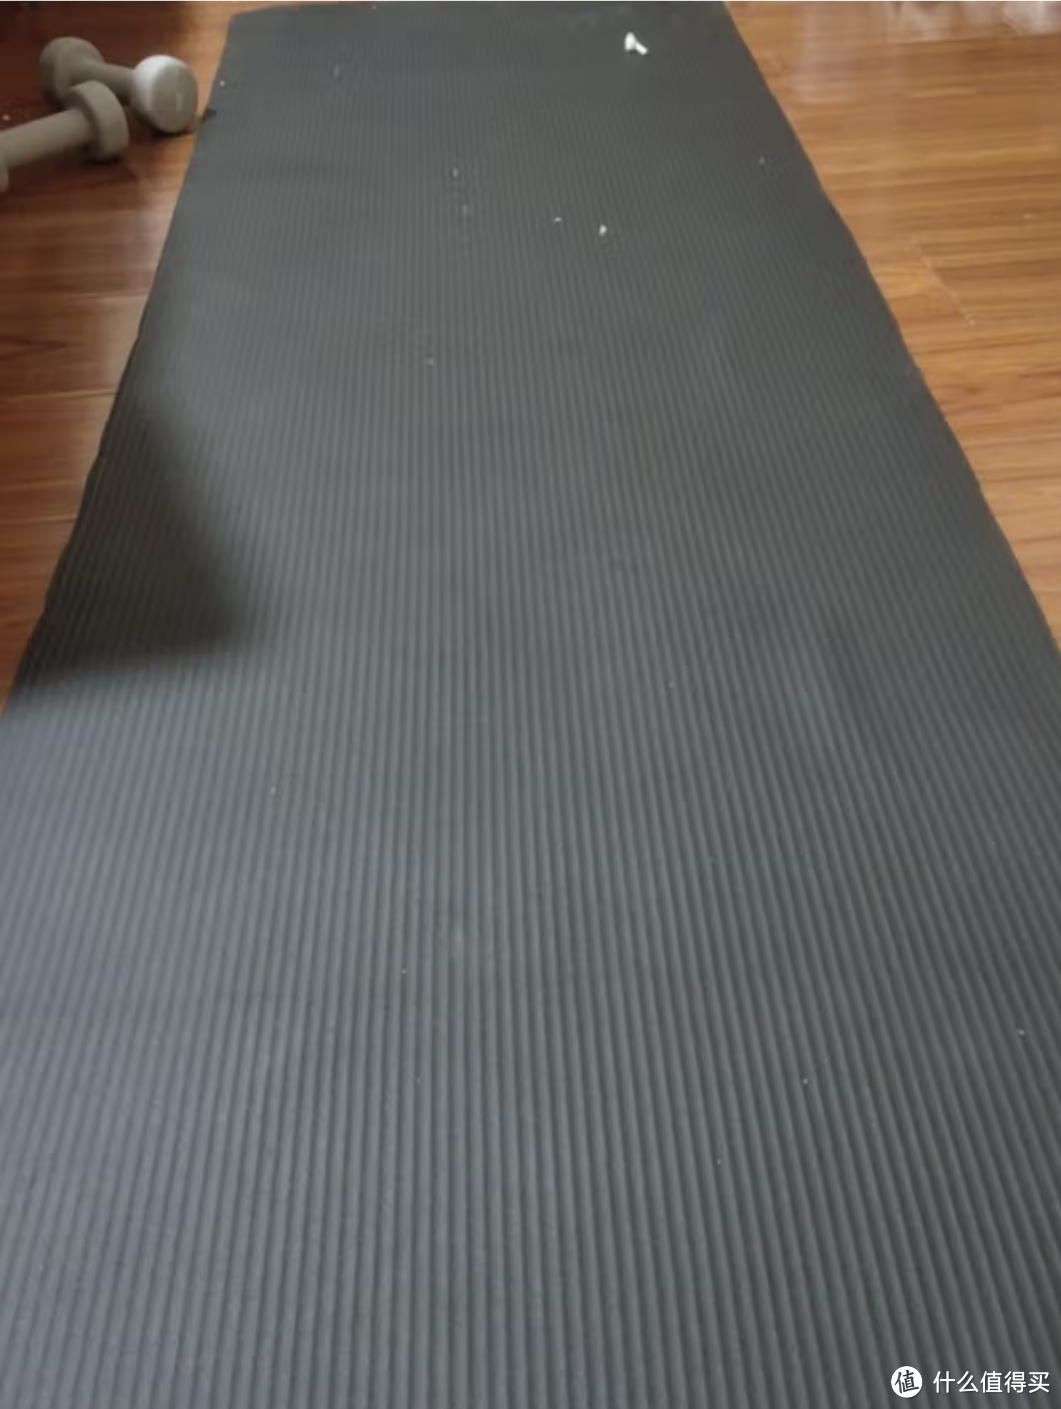 每天在家锻炼做俯卧撑和仰卧起坐的时候我都会在这个瑜伽垫上面锻炼